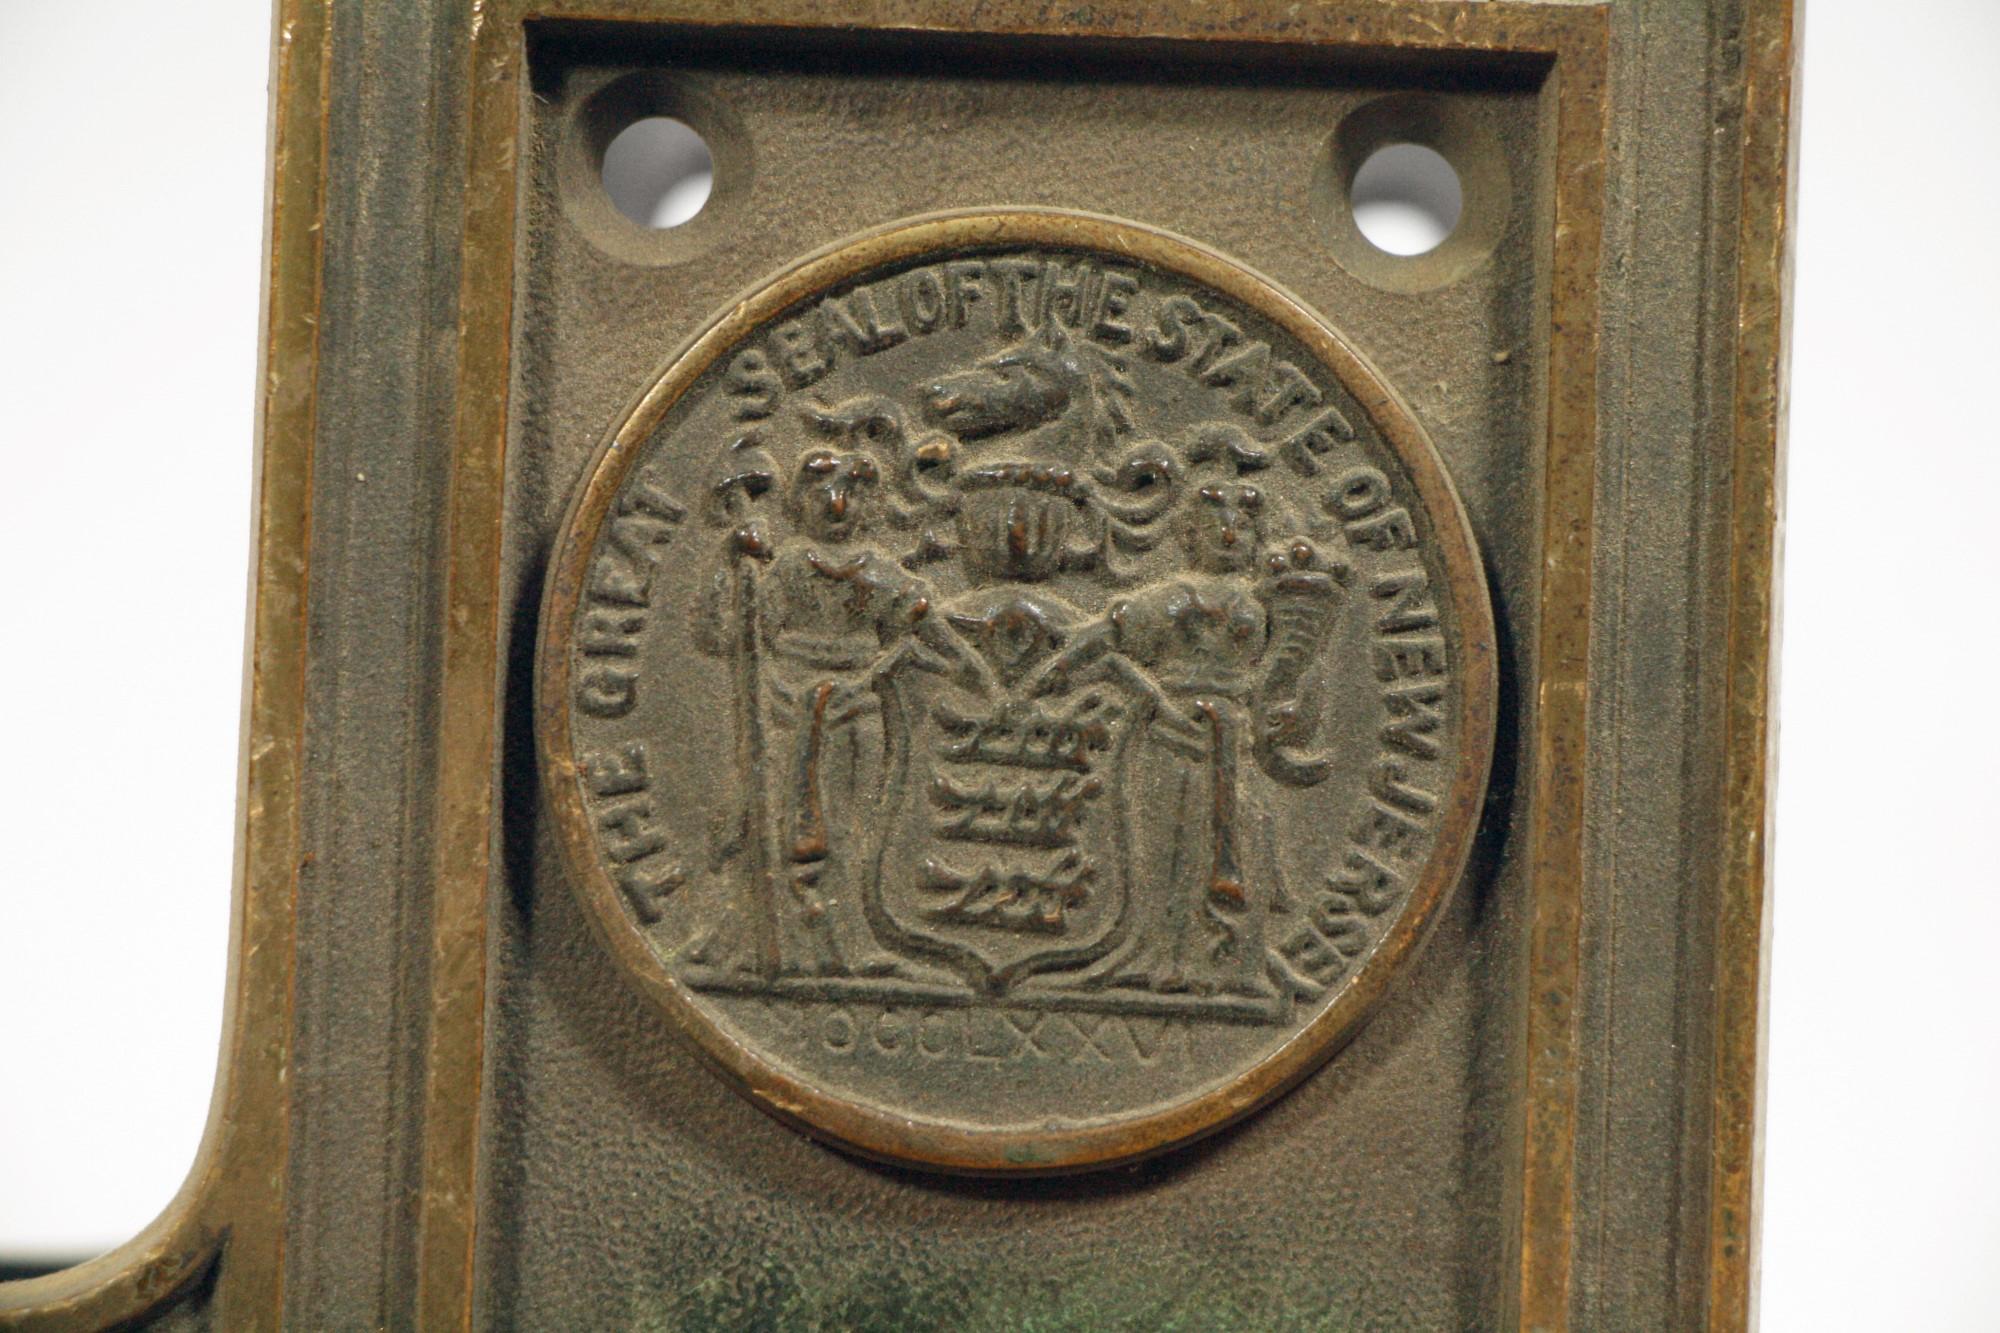 1920 door locks